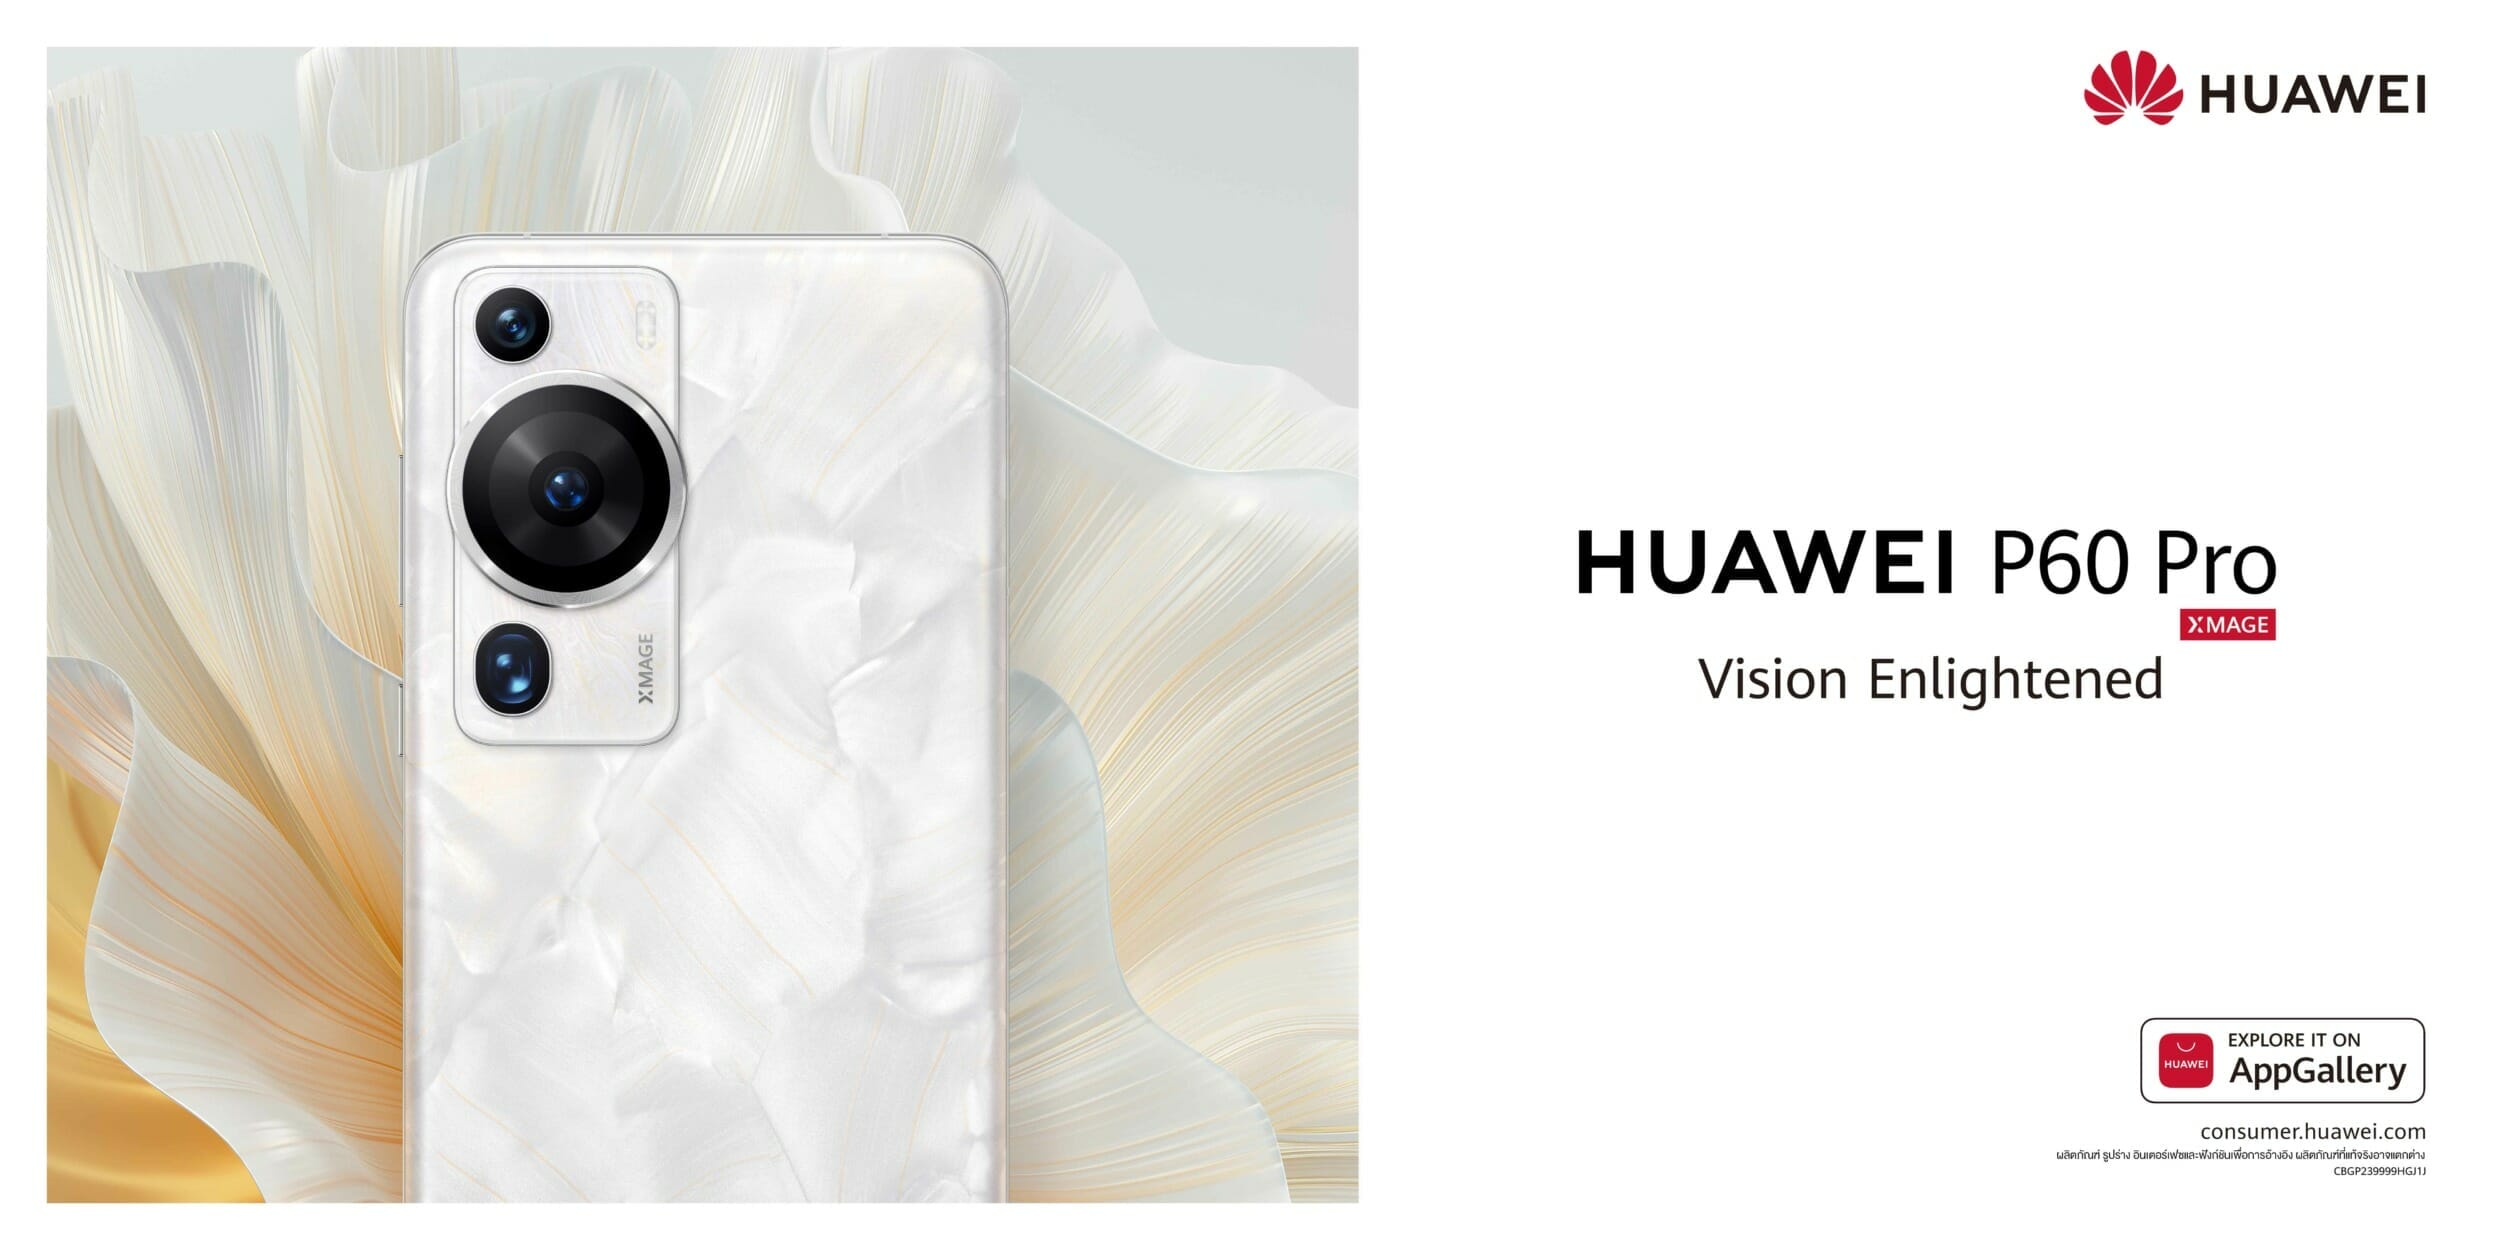 HUAWEI P60 Pro อัจฉริยะด้านการถ่ายภาพในที่แสงน้อย ความอันดับหนึ่งผลทดสอบ DxOMark